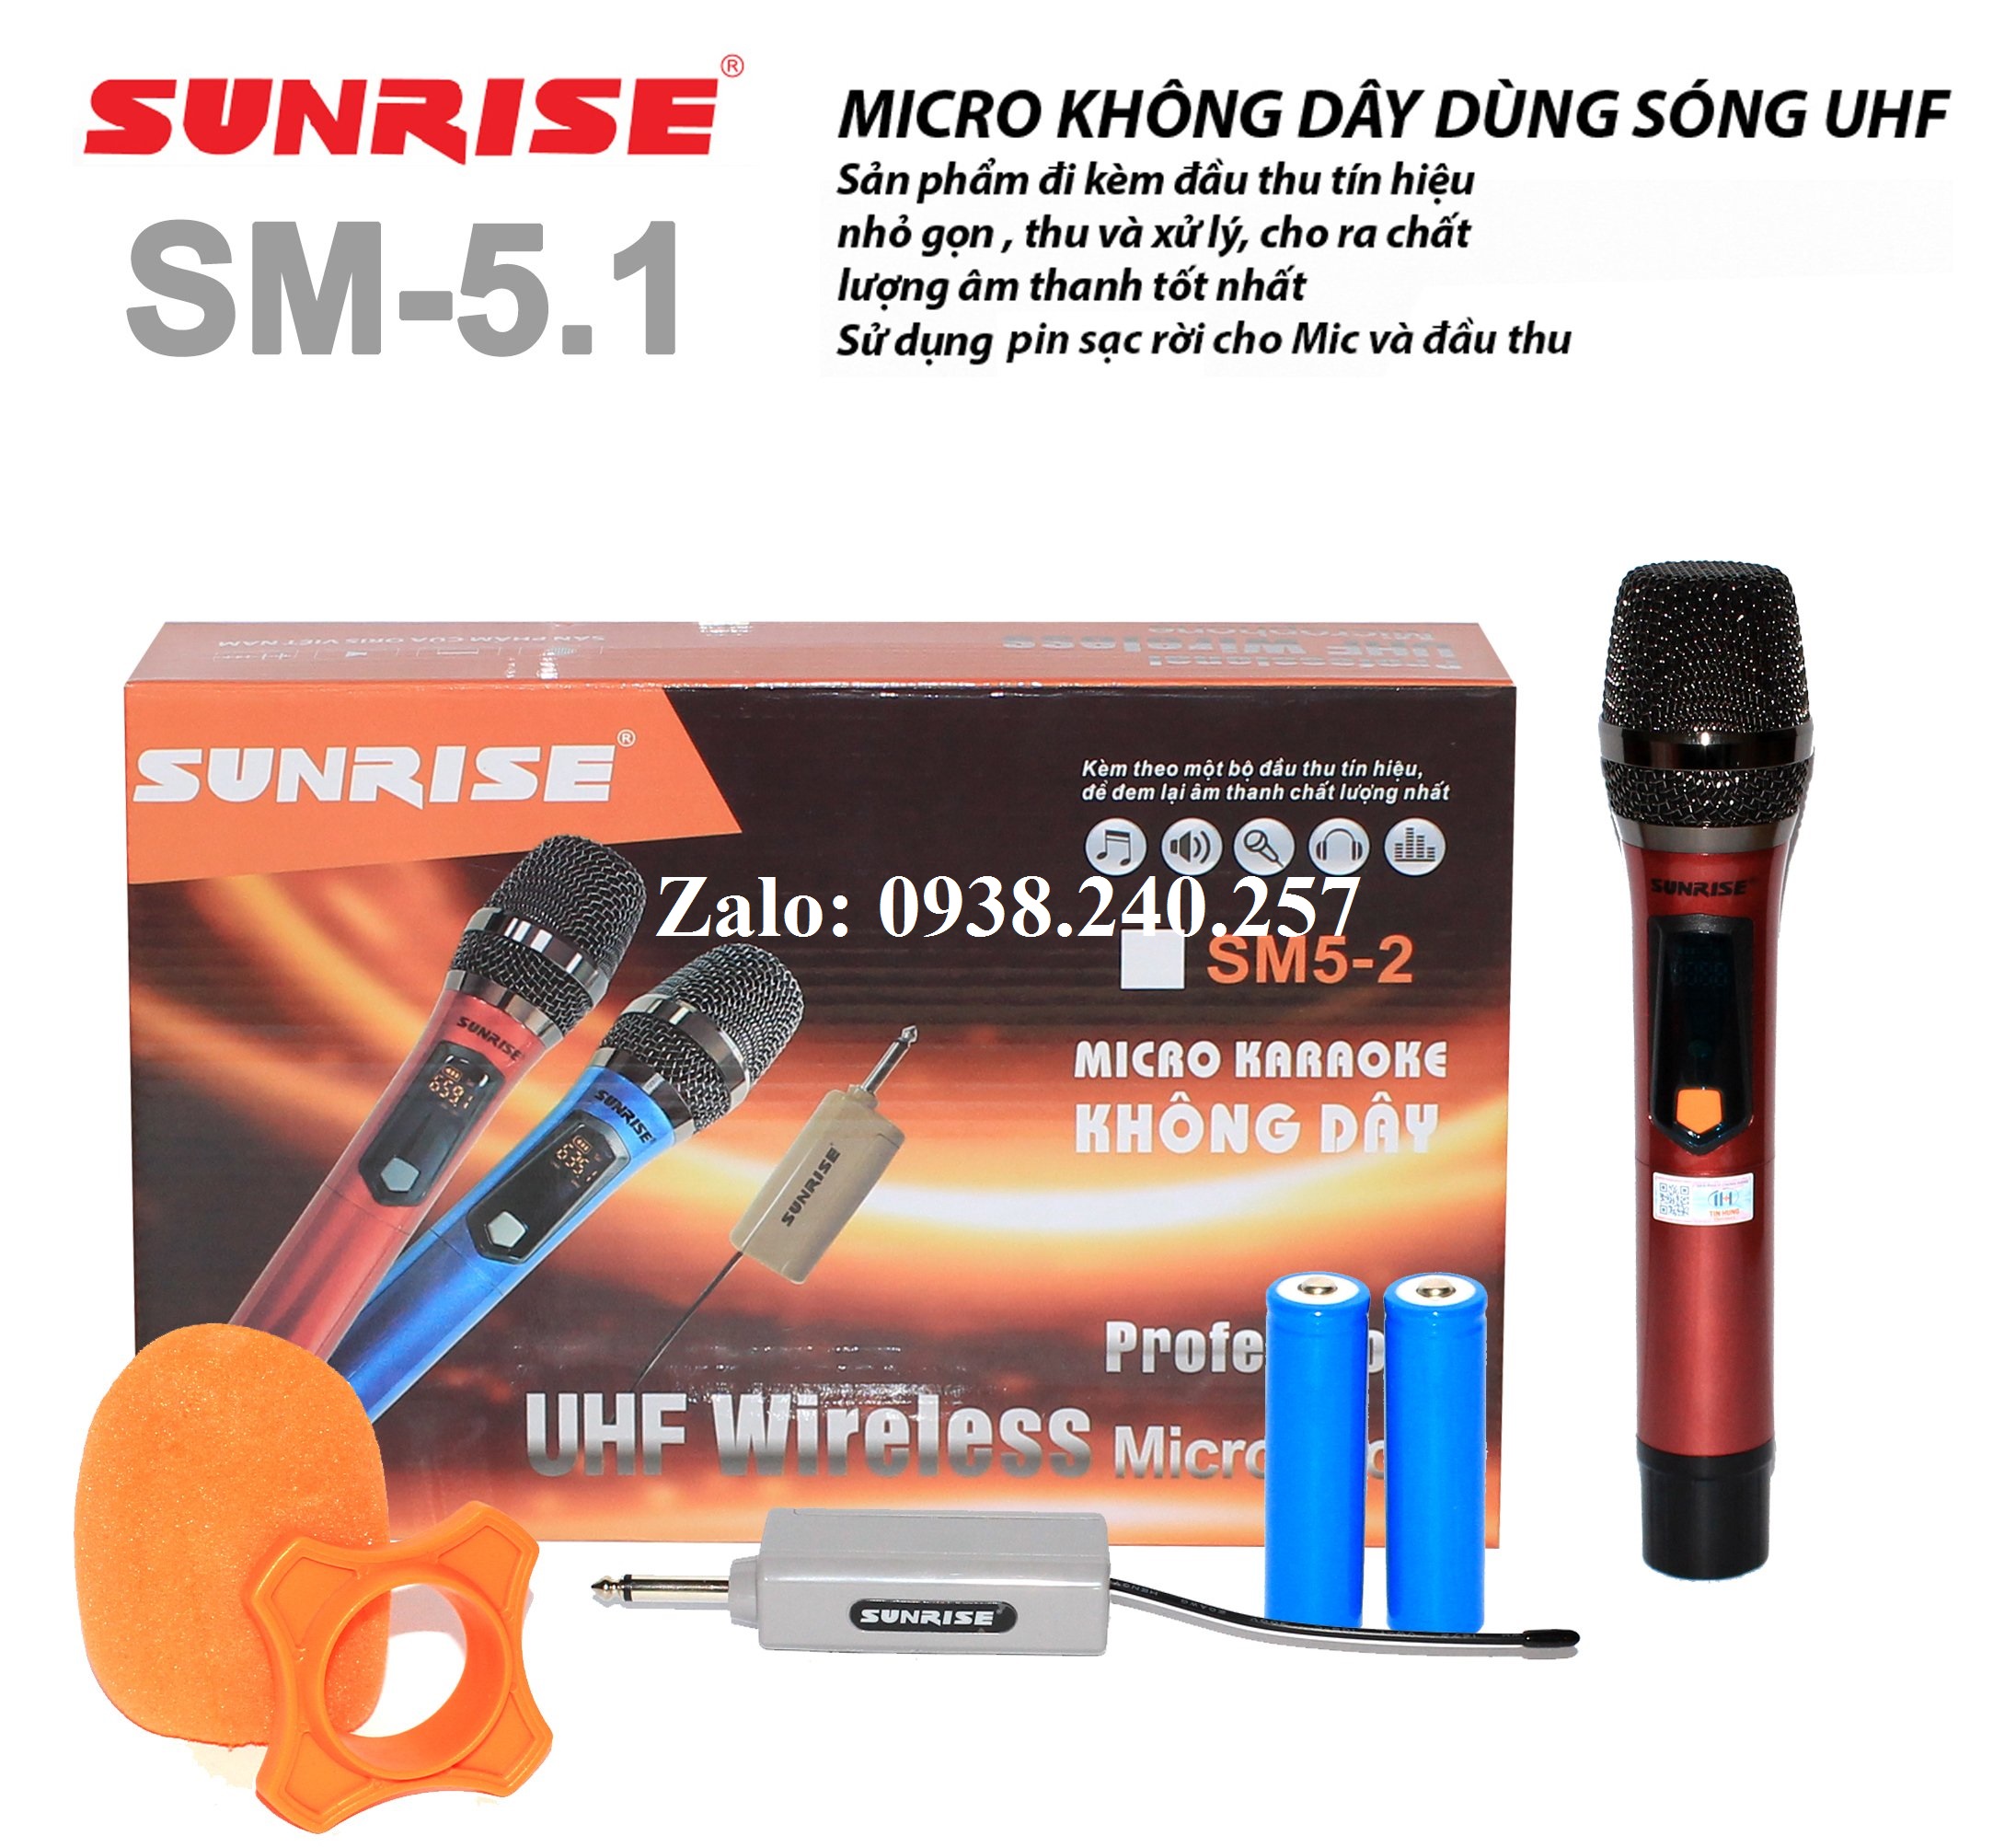 Micro không dây sunrise SM-5.1 đa năng sử dụng cho amply, loa kéo...